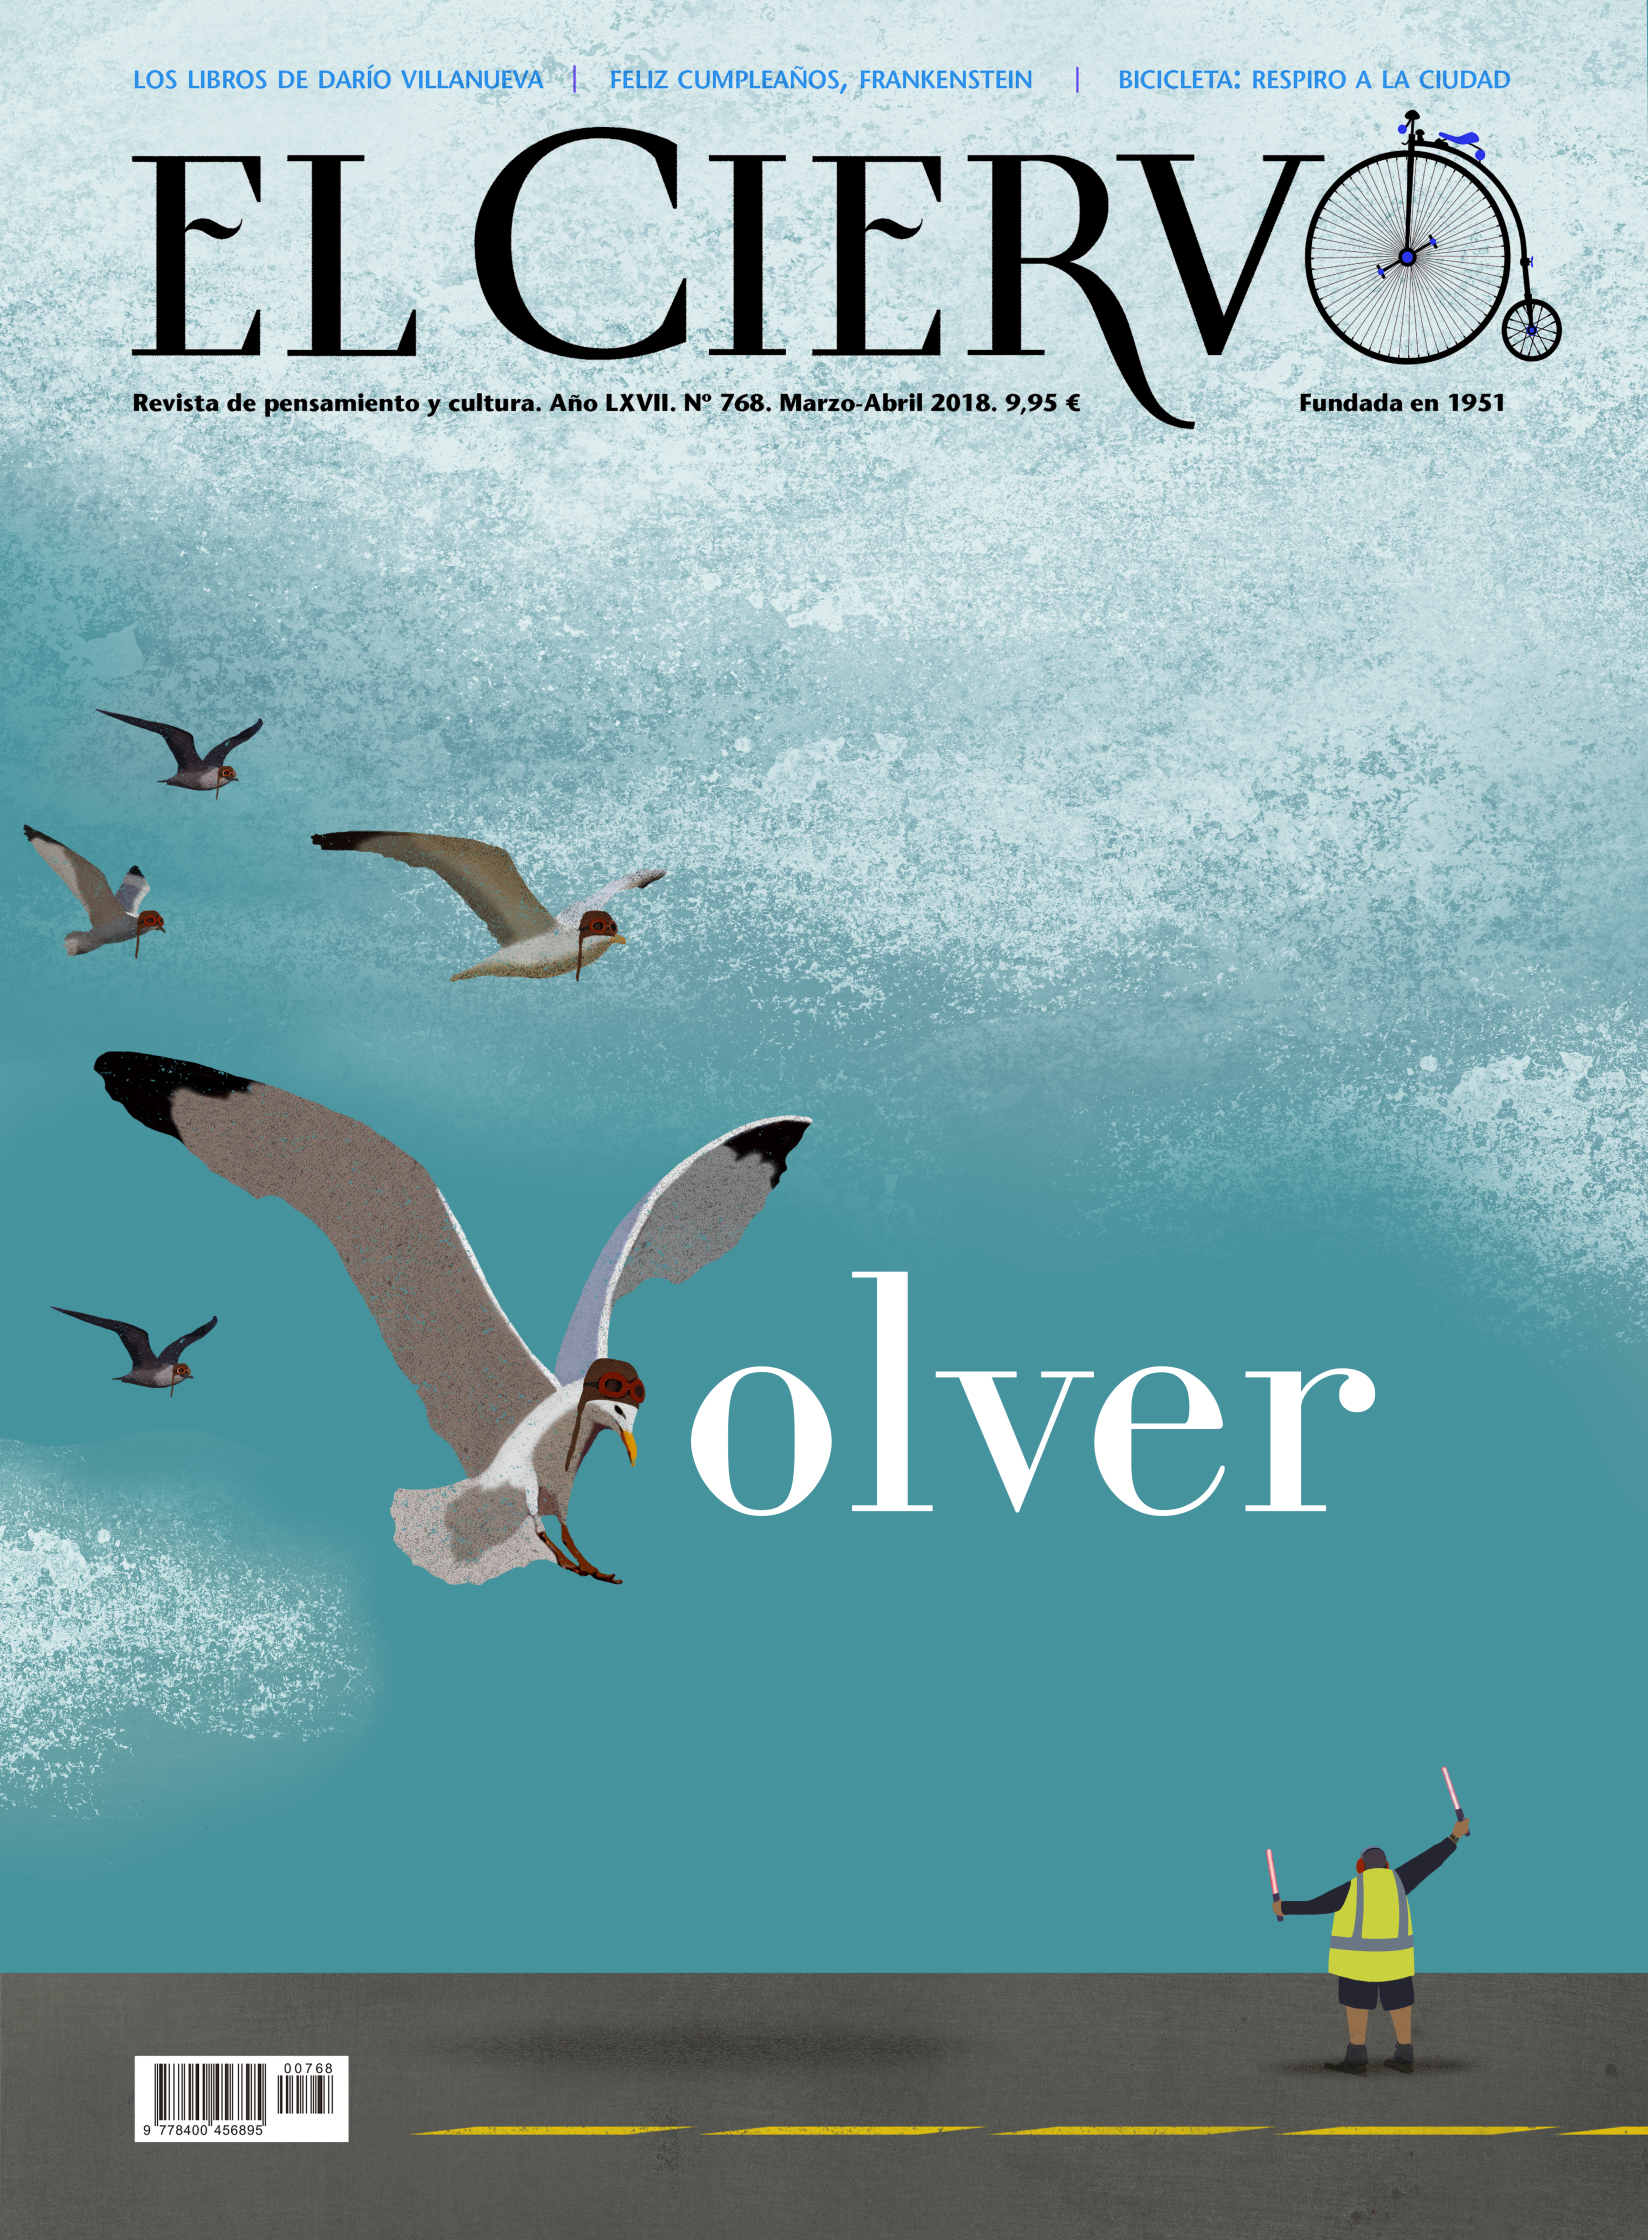 Cover for El Ciervo - Volver.jpg